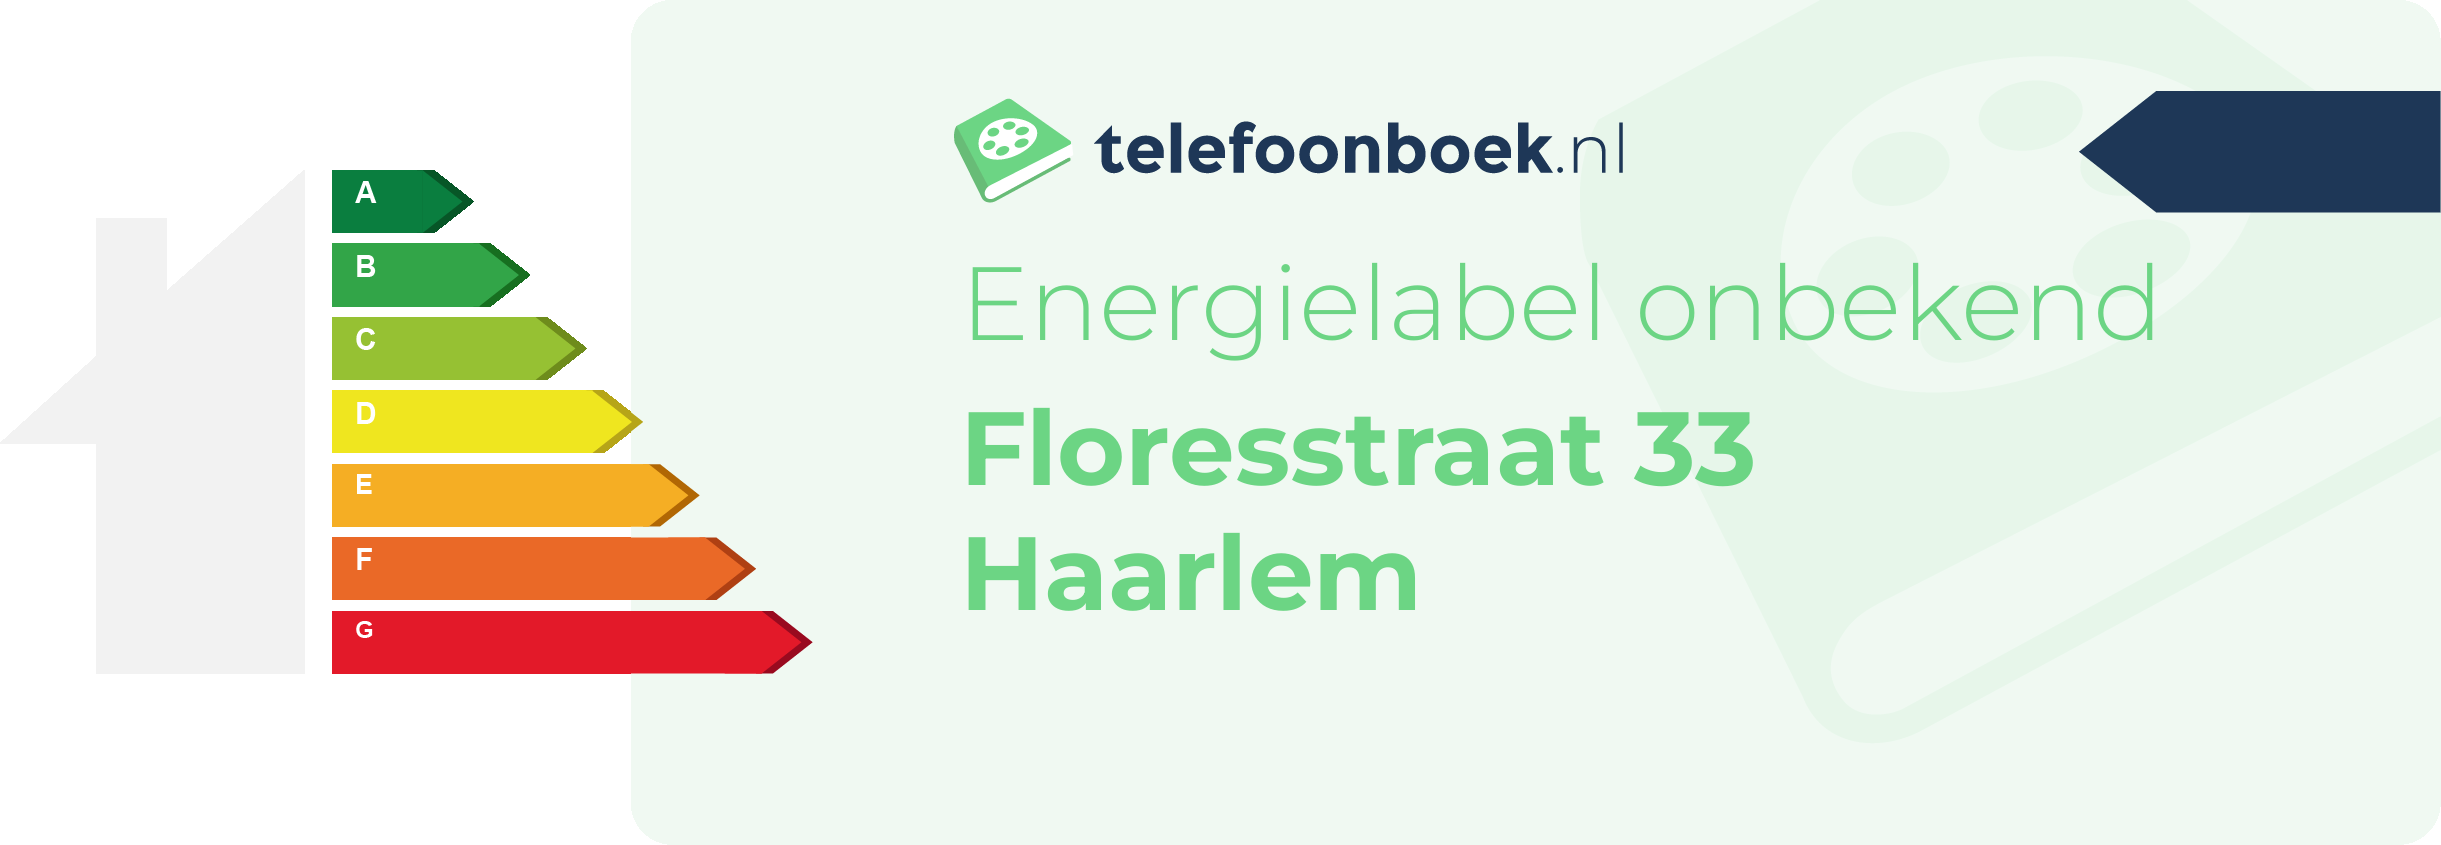 Energielabel Floresstraat 33 Haarlem